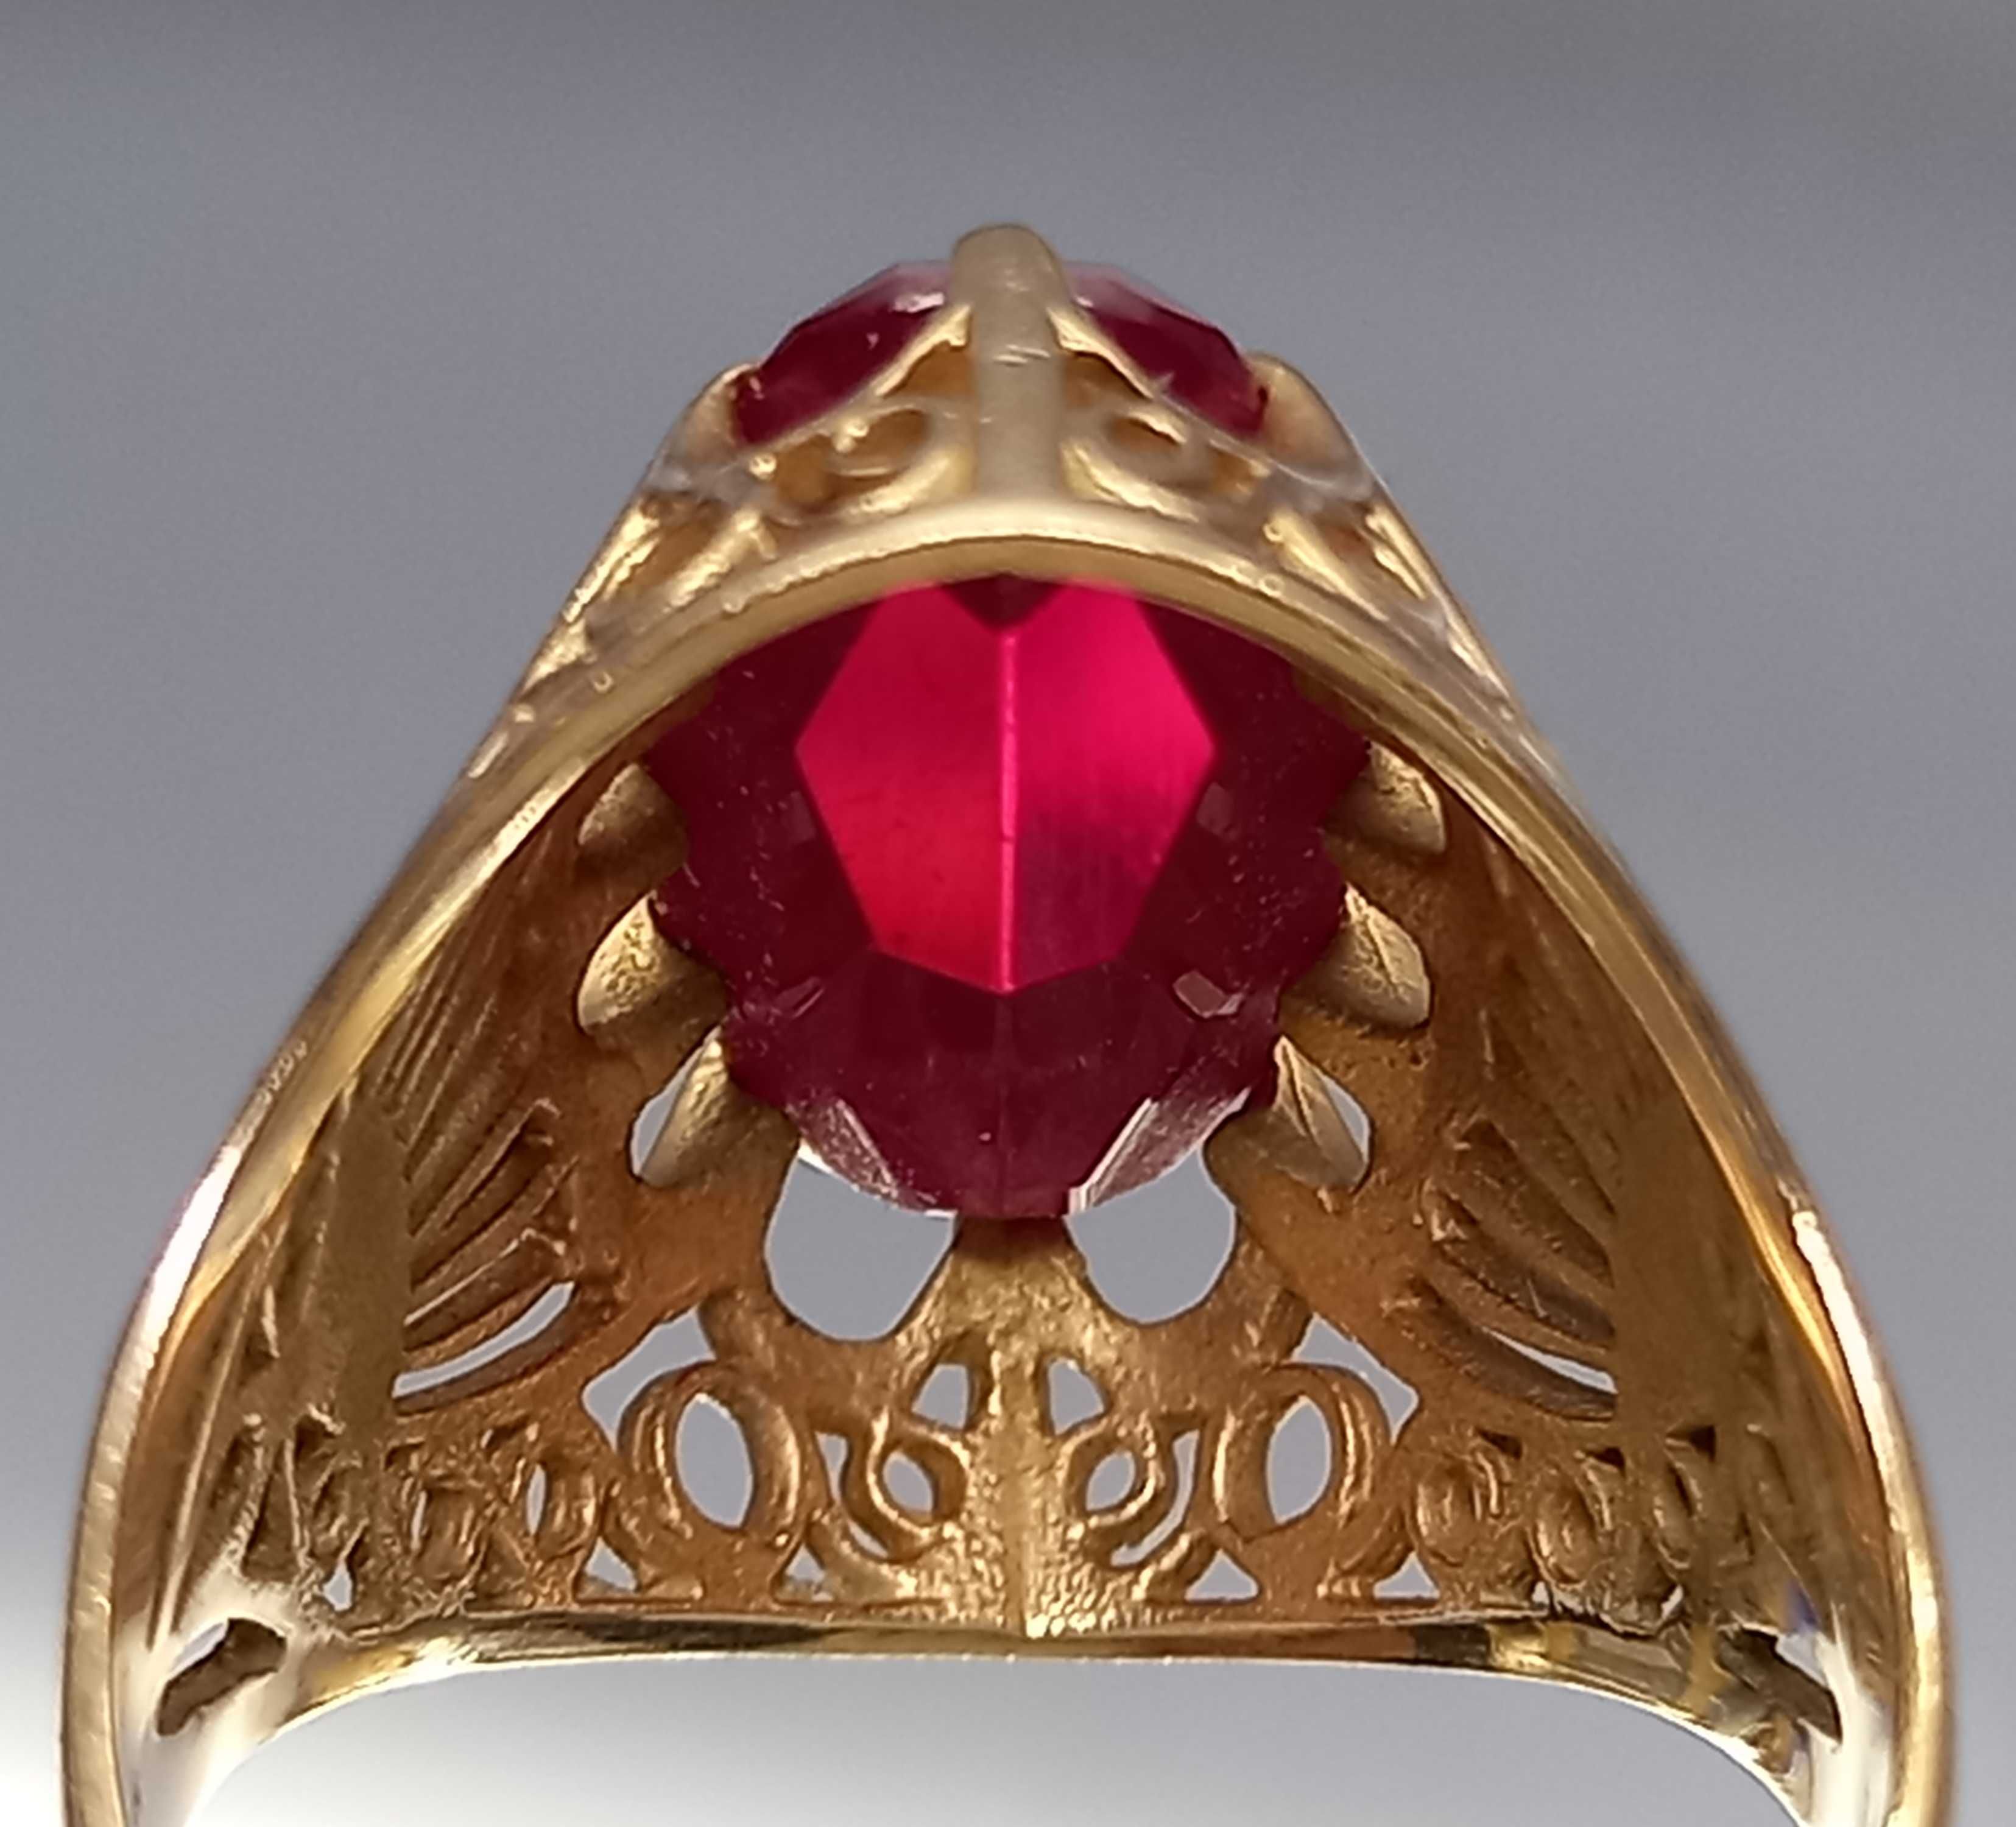 Rosyjski pierścionek z czerwonym oczkiem, złoto 583, lata 60,70-te